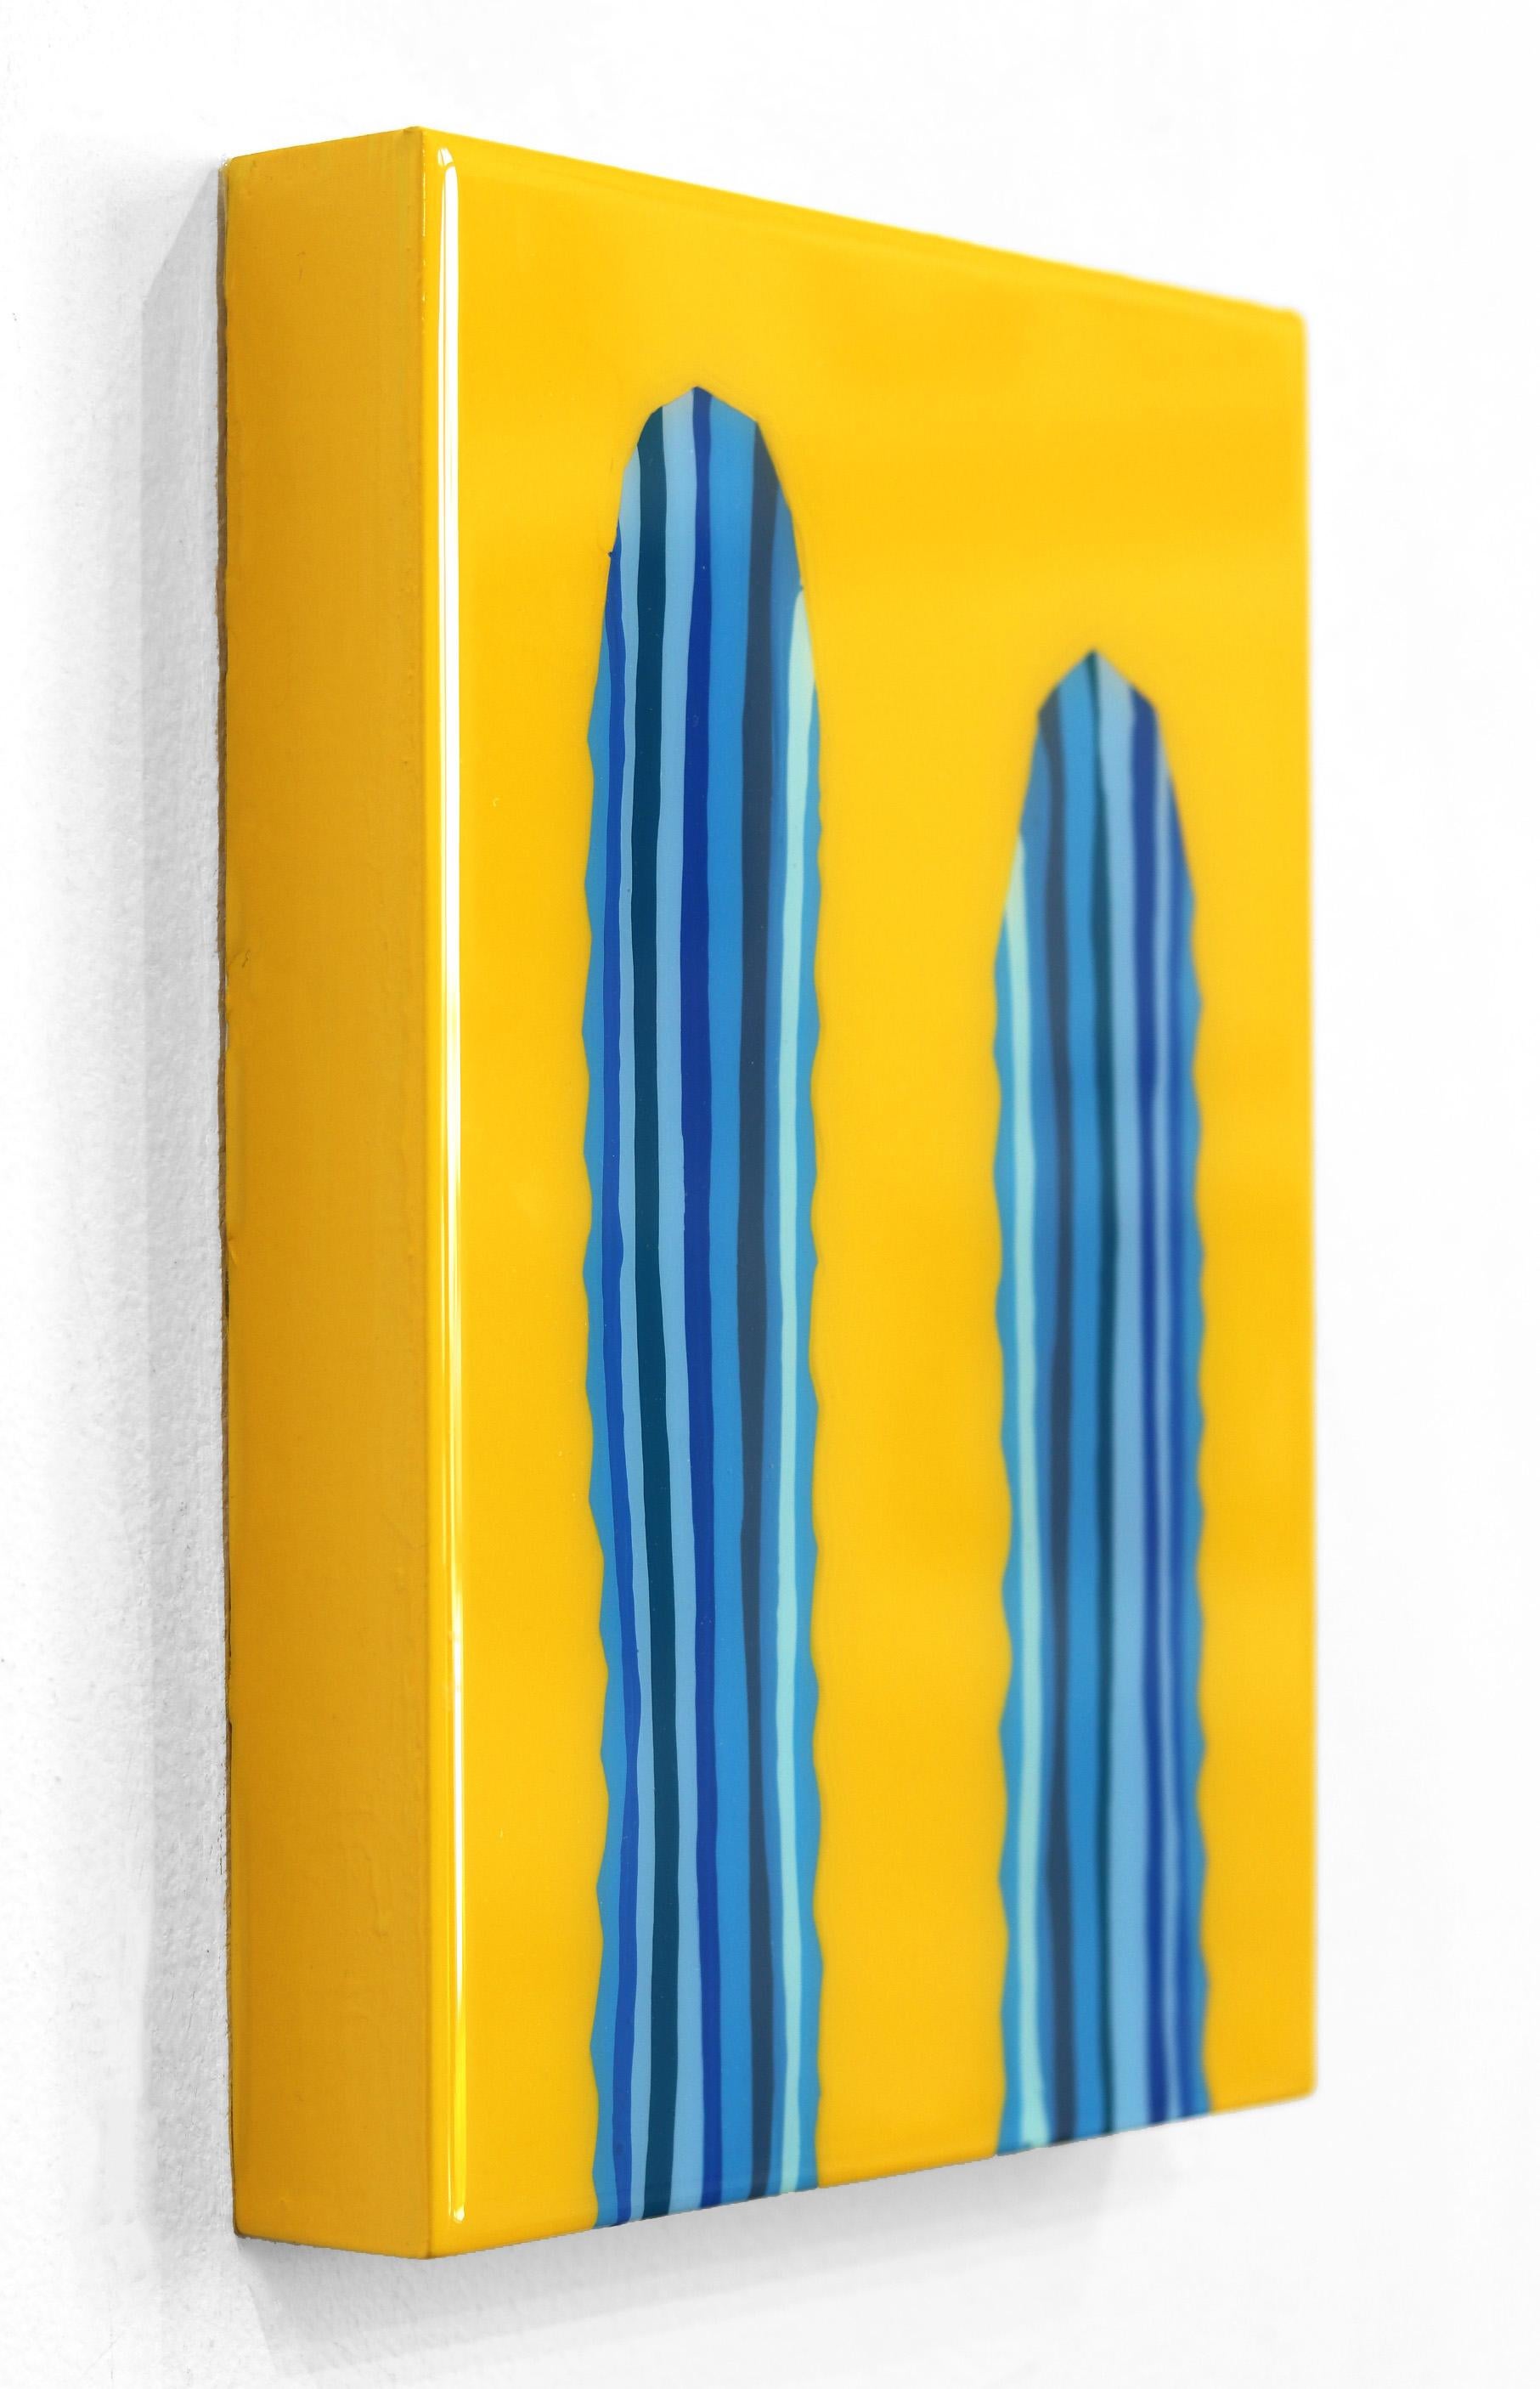 Peinture de cactus pop art d'inspiration sud-ouest, jaune et bleu vif - Orange Abstract Painting par Will Beger